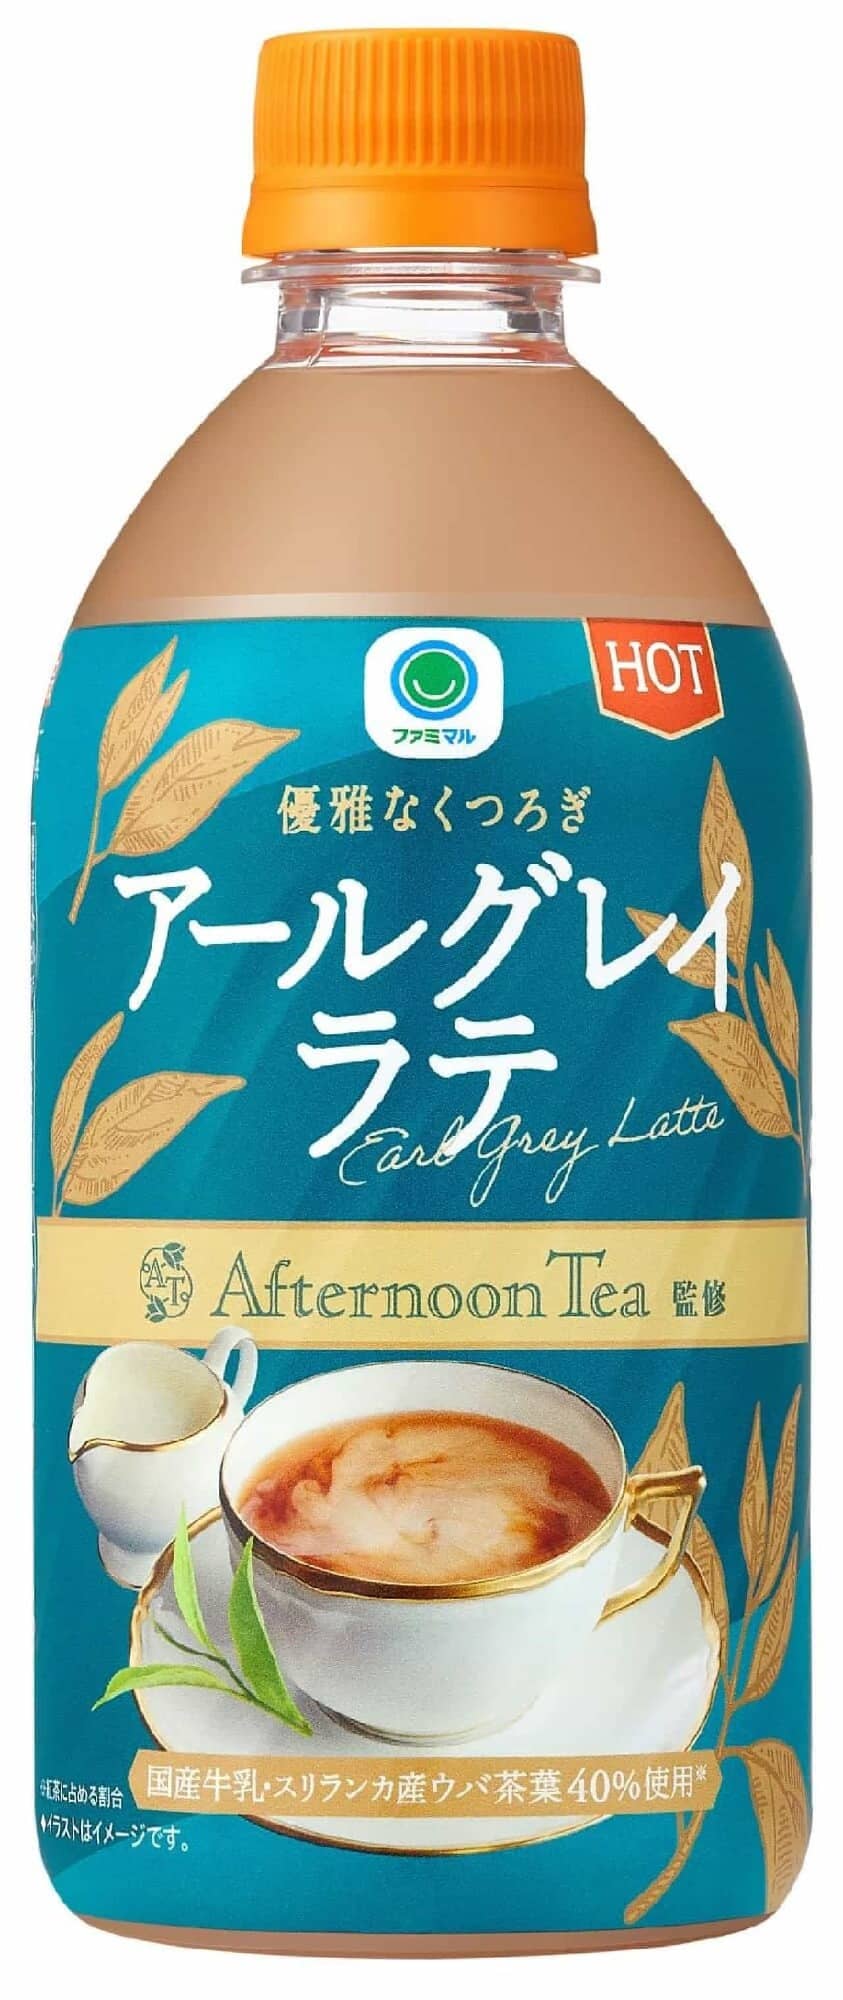 Famimar Hot Earl Grey Latte